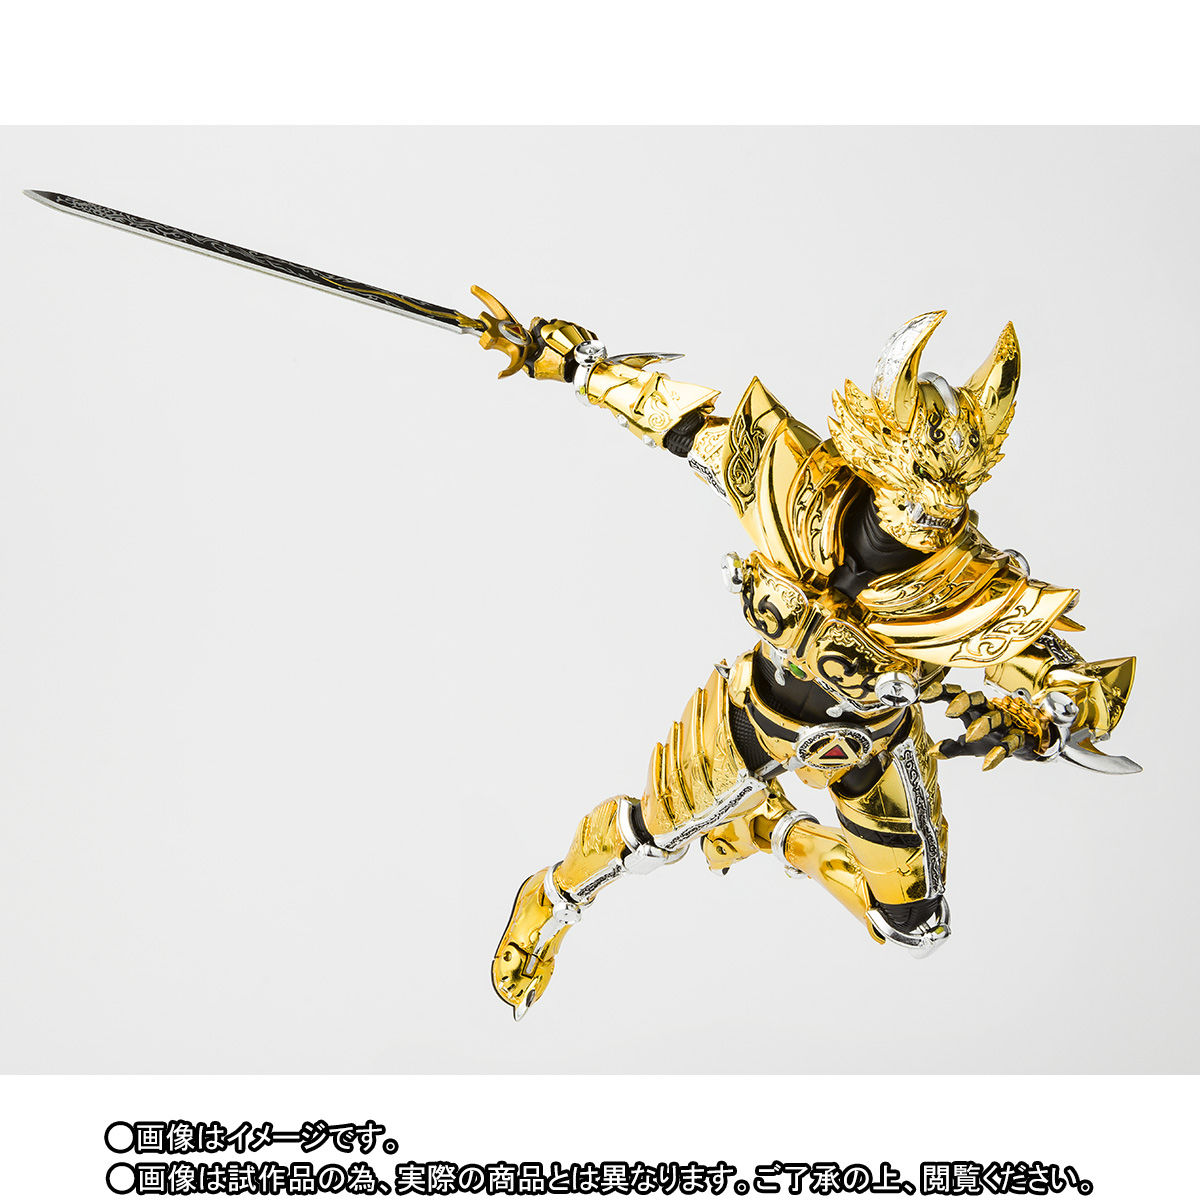 日本正規販売店 牙狼 S.H.Figuarts (真骨彫製法) 黄金騎士 ガロ(冴島鋼